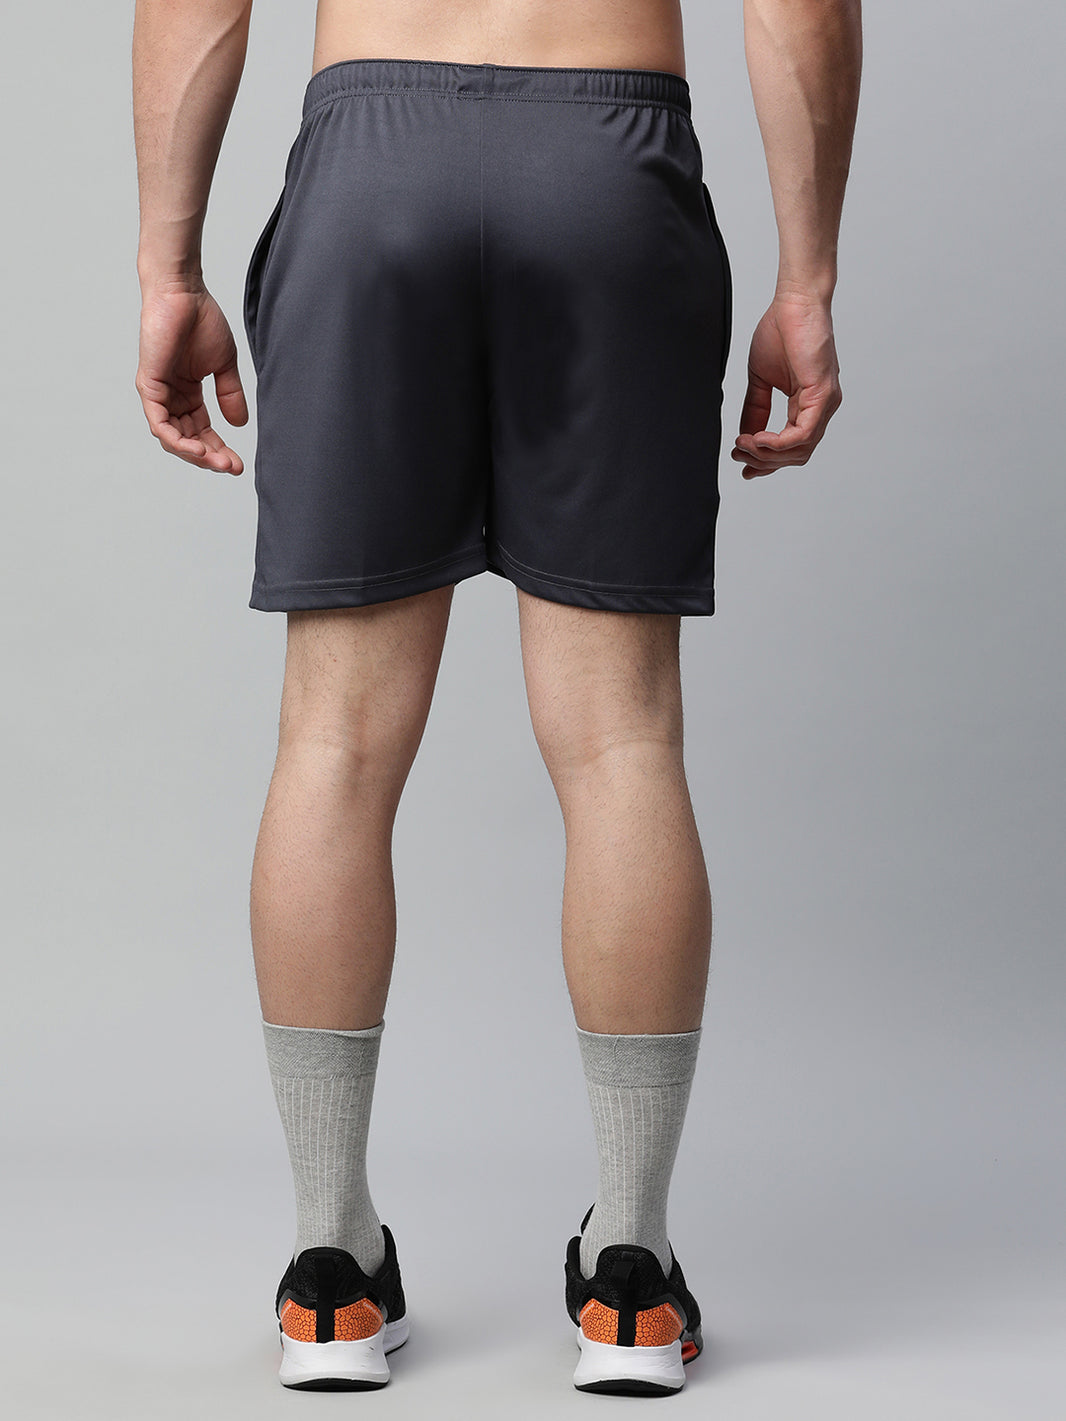 Vimal Jonney Dryfit Solid Grey Shorts for Men